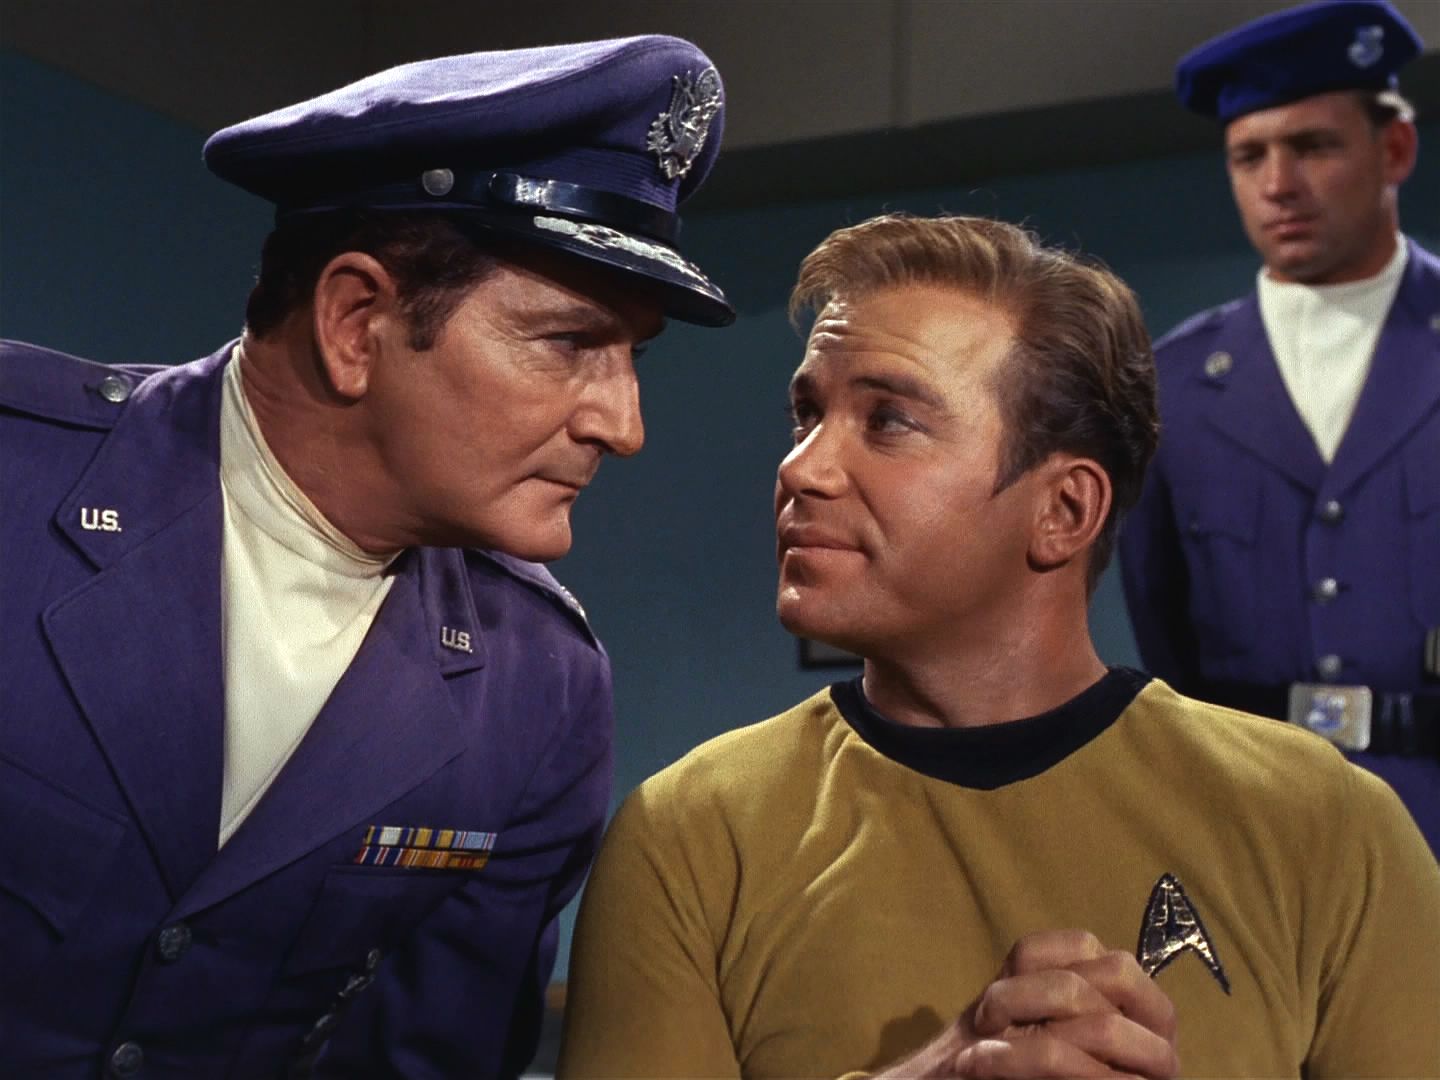 Kirk a Sulu zatím pokračovali do temné komory pro fotky, to však spustilo alarm. Kirk duchapřítomně umožnil Suluovi transportovat se a sám je vyslýchán plukovníkem Fellinim.